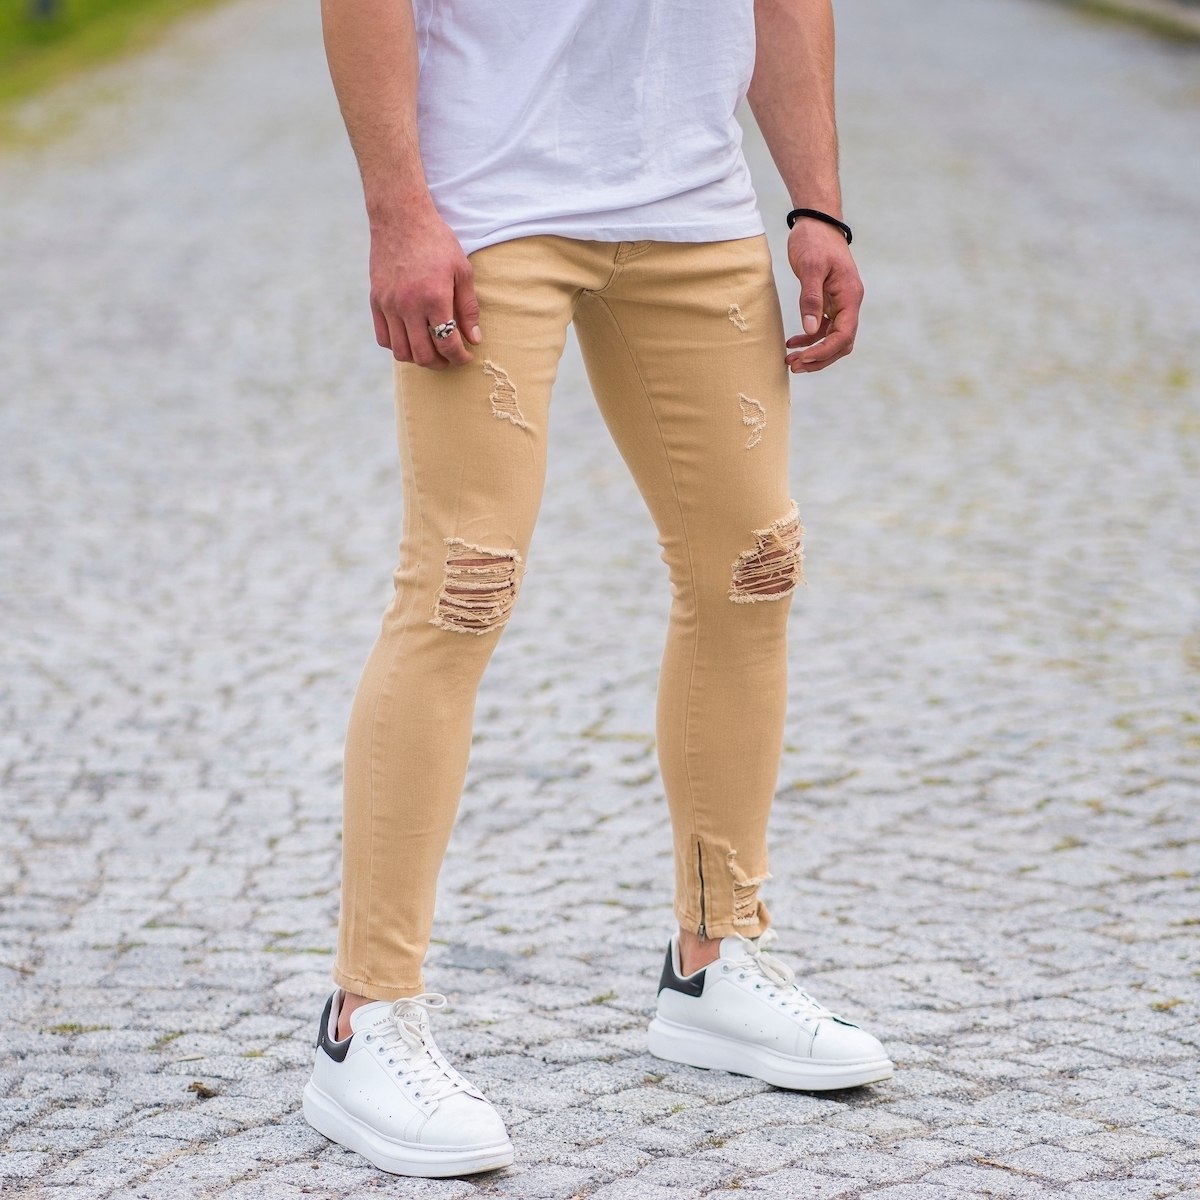 Men's Skinny Ragged Jeans In Beige